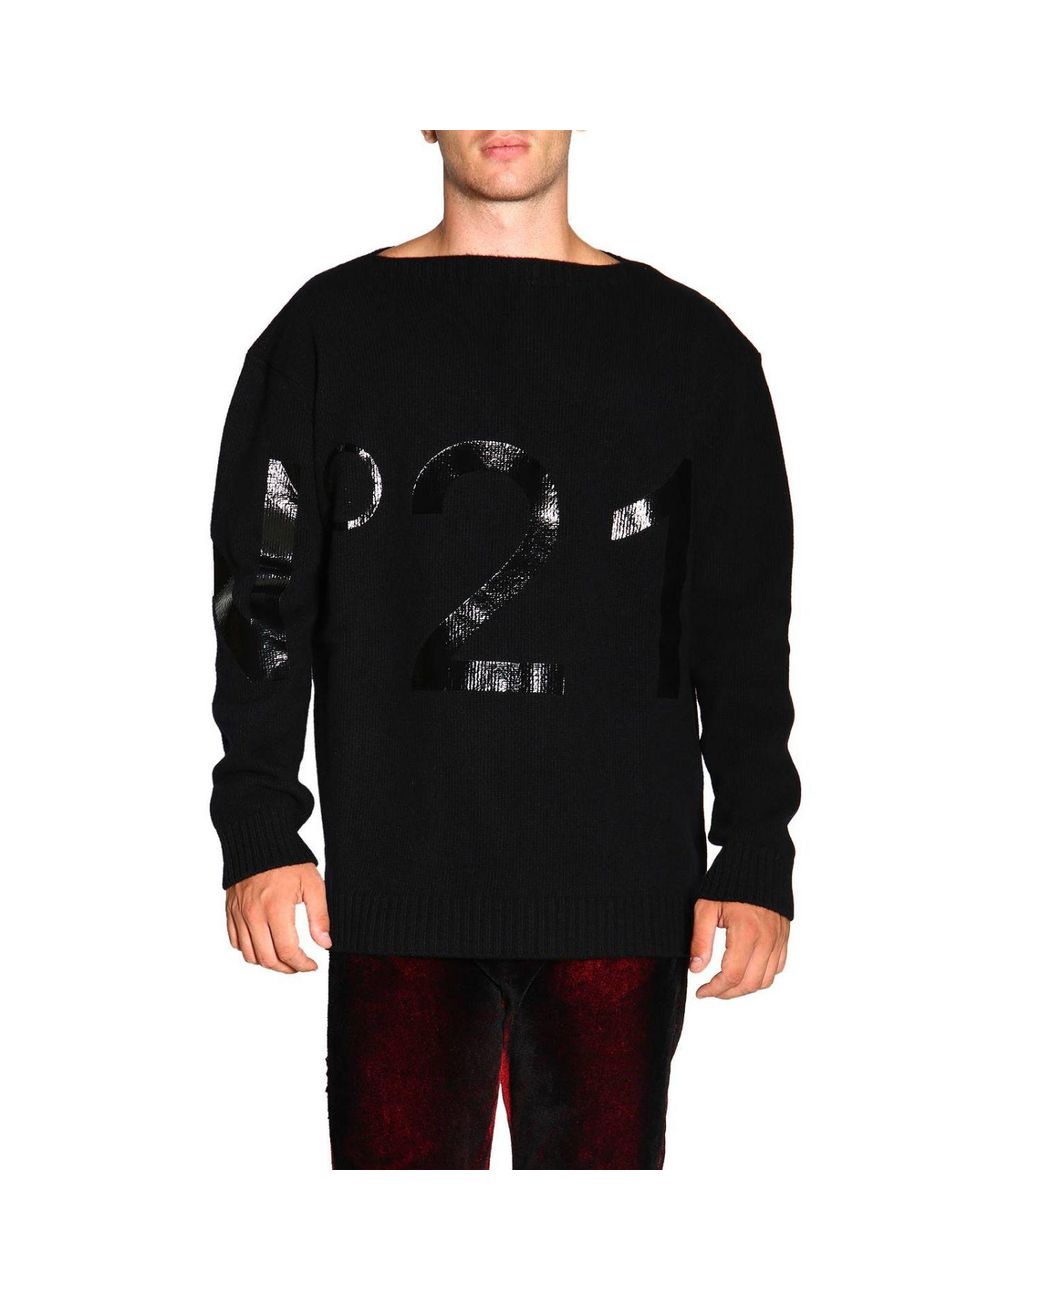 N°21 Wool Men's Sweater in Black for Men - Lyst